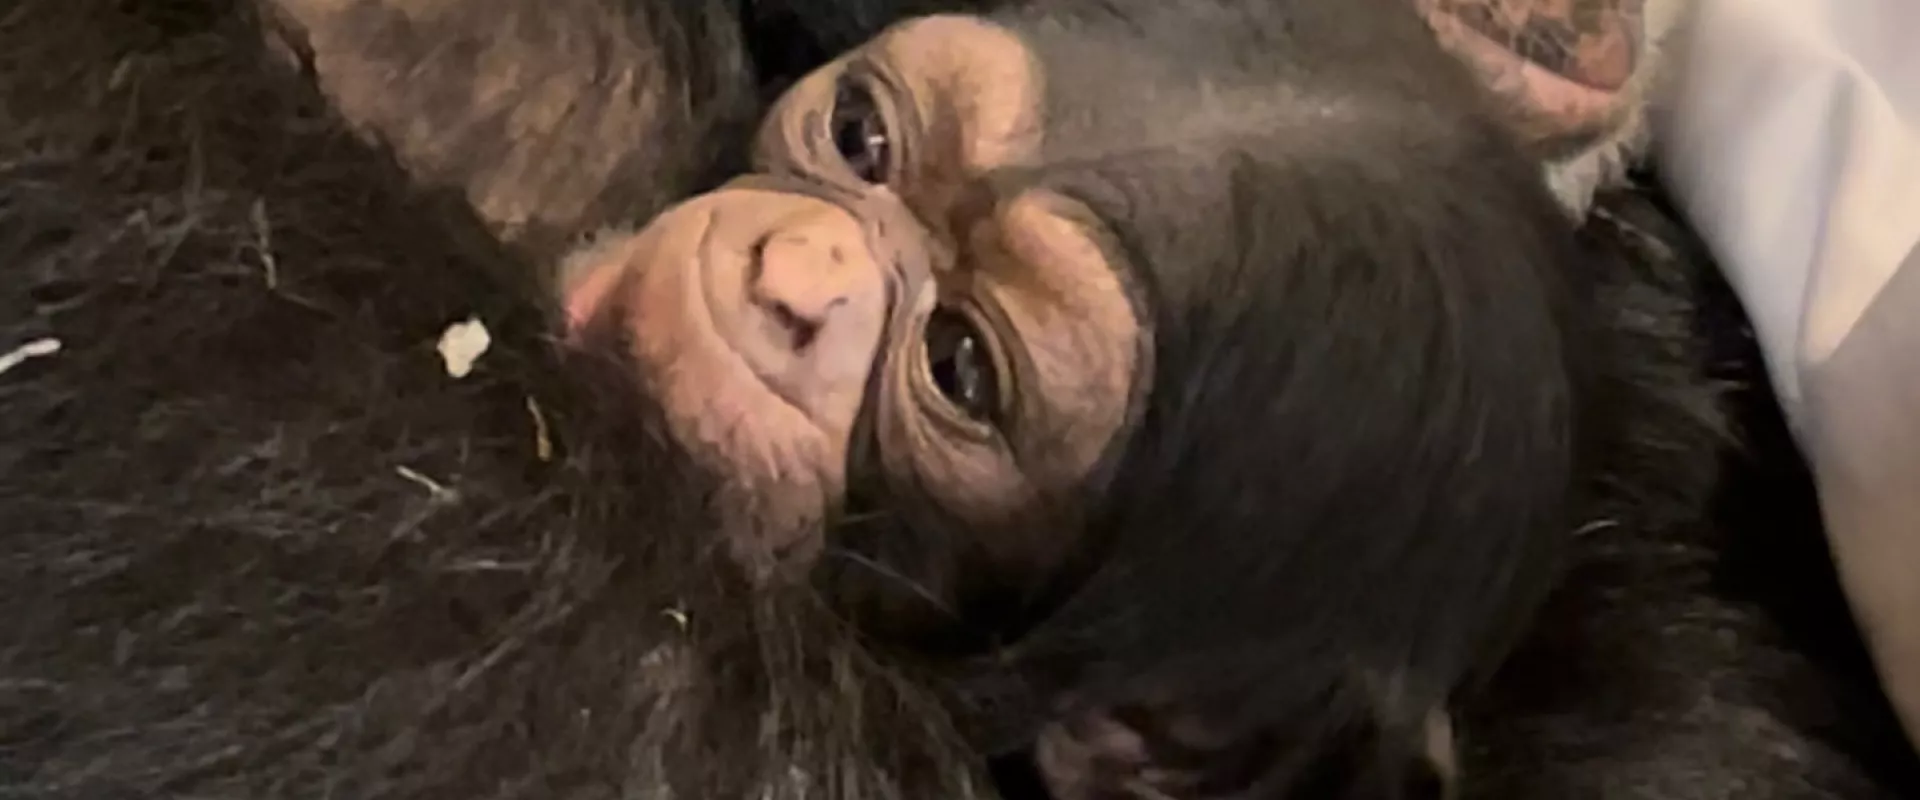 Chimpanzee Makes Her Debut at the North Carolina Zoo